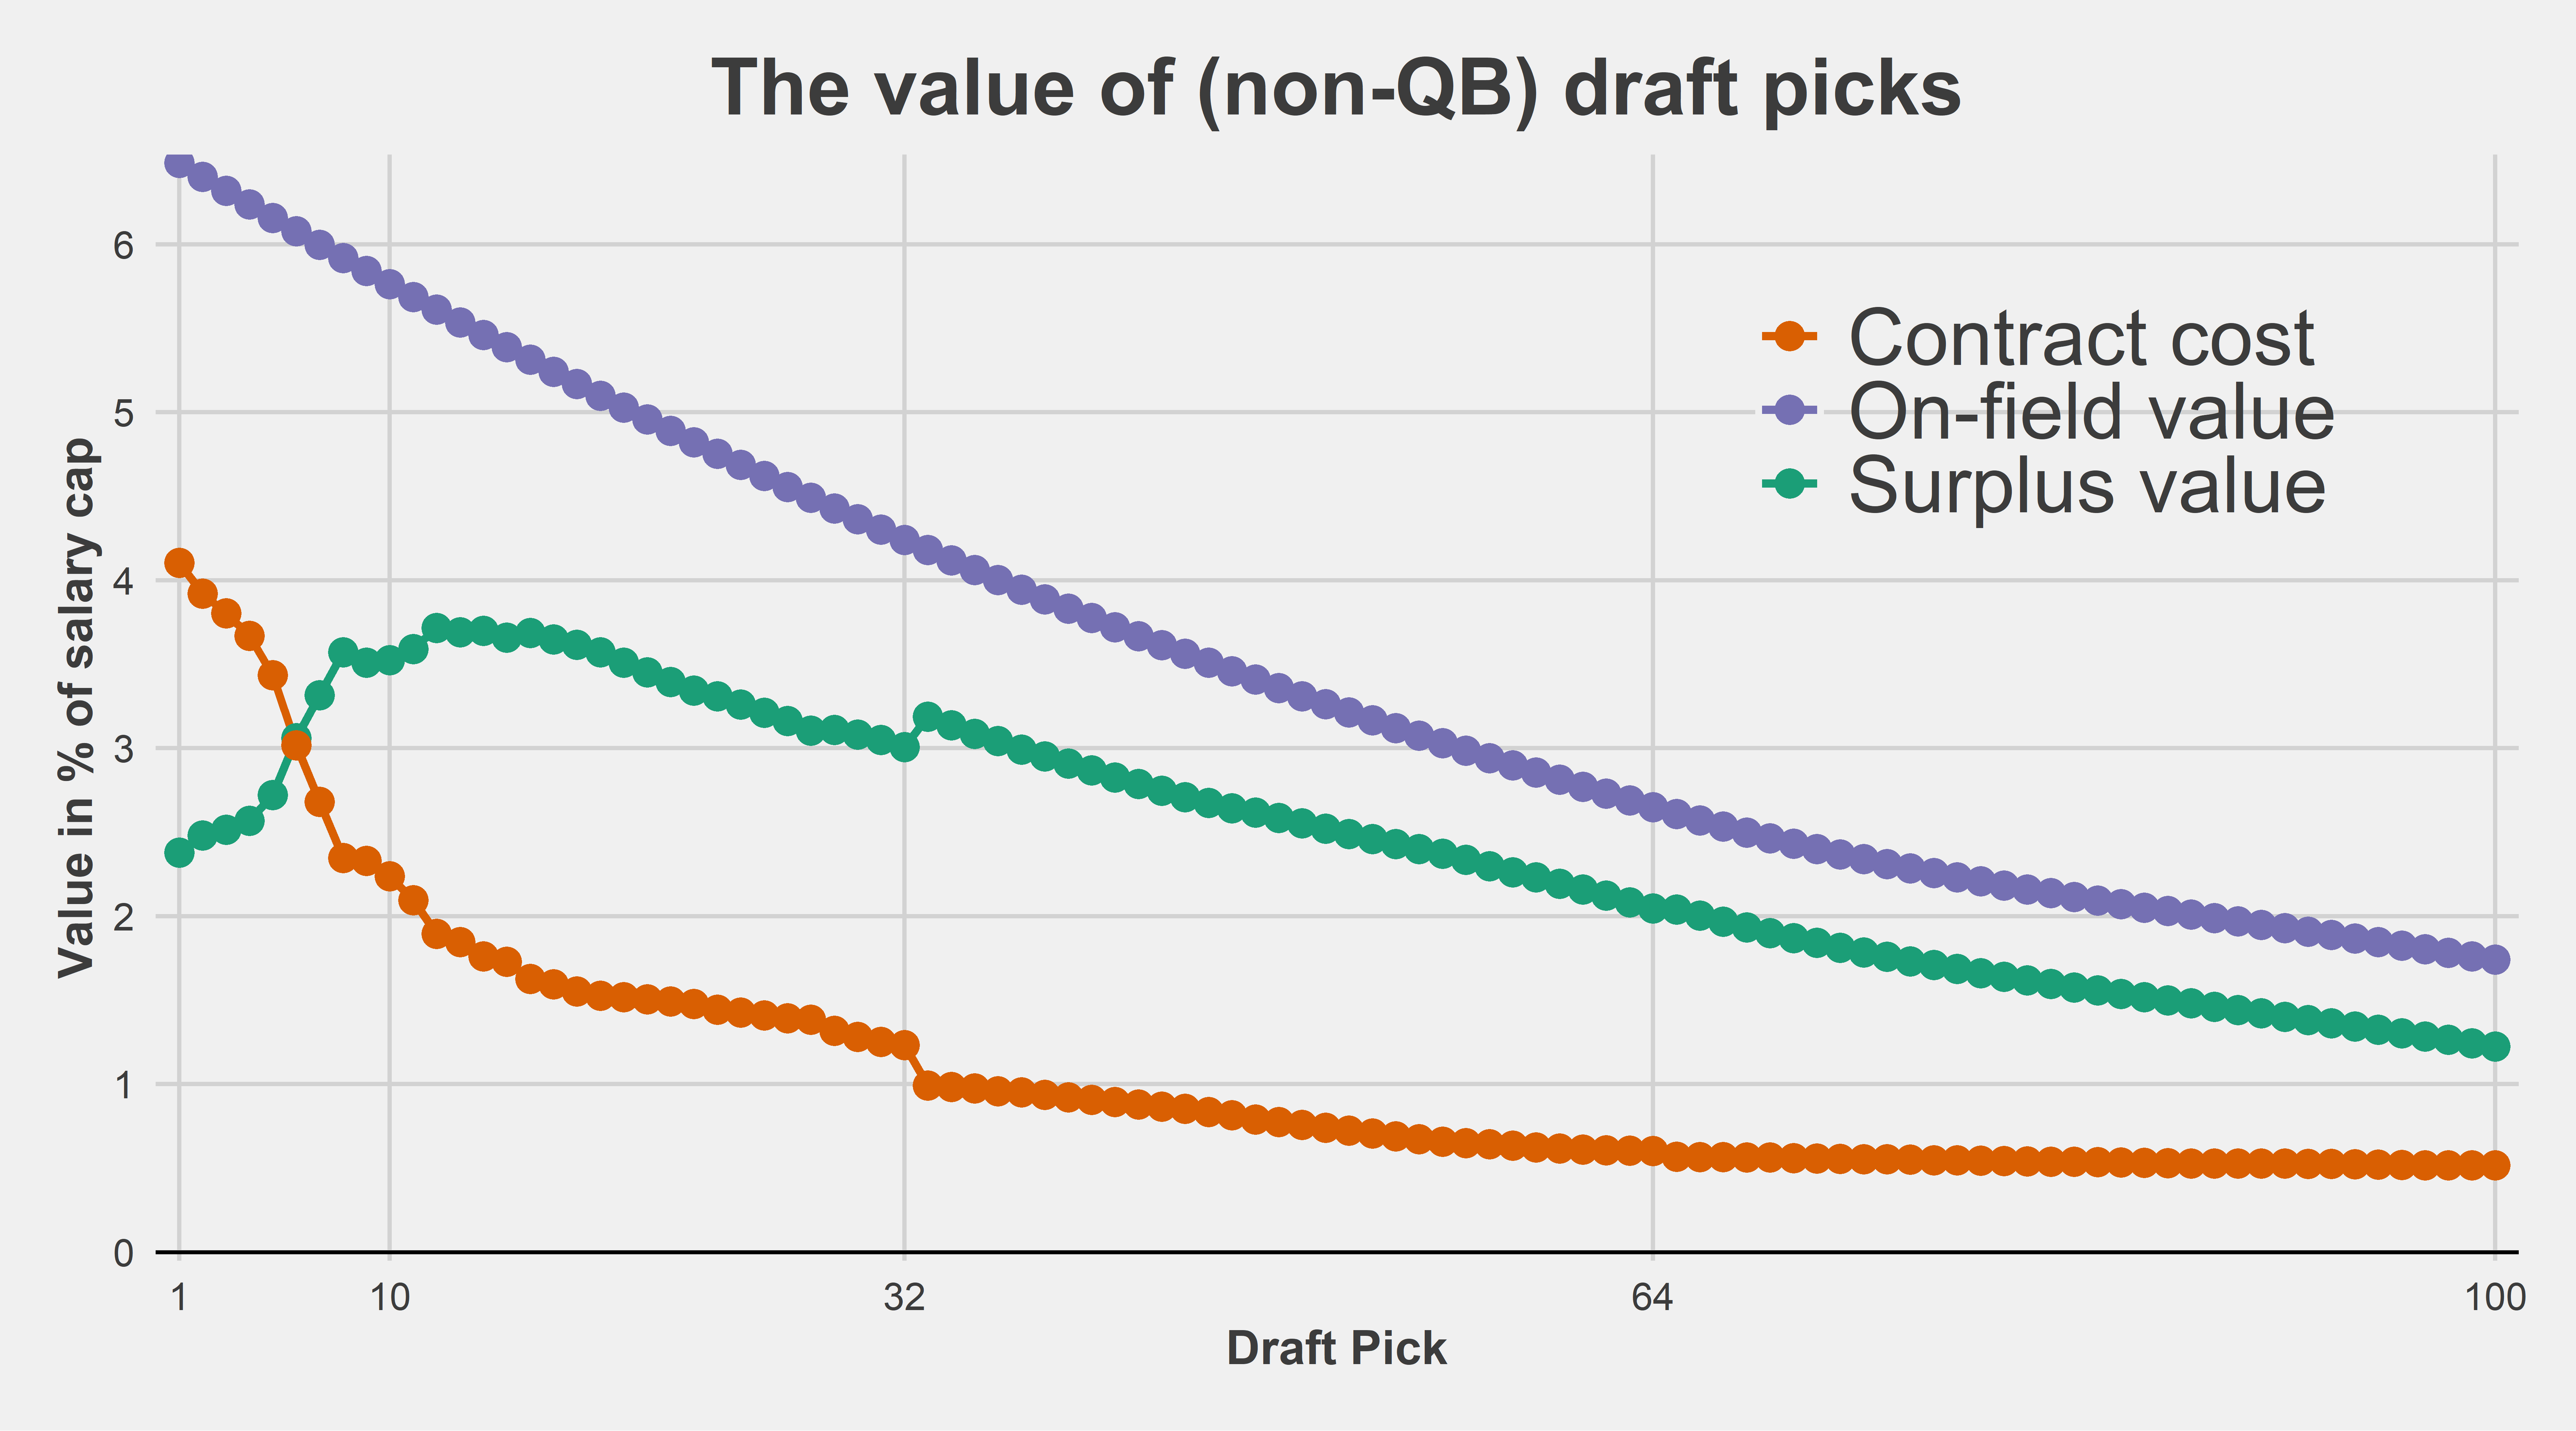 2022 NFL draft: Full draft order, pick trade value chart